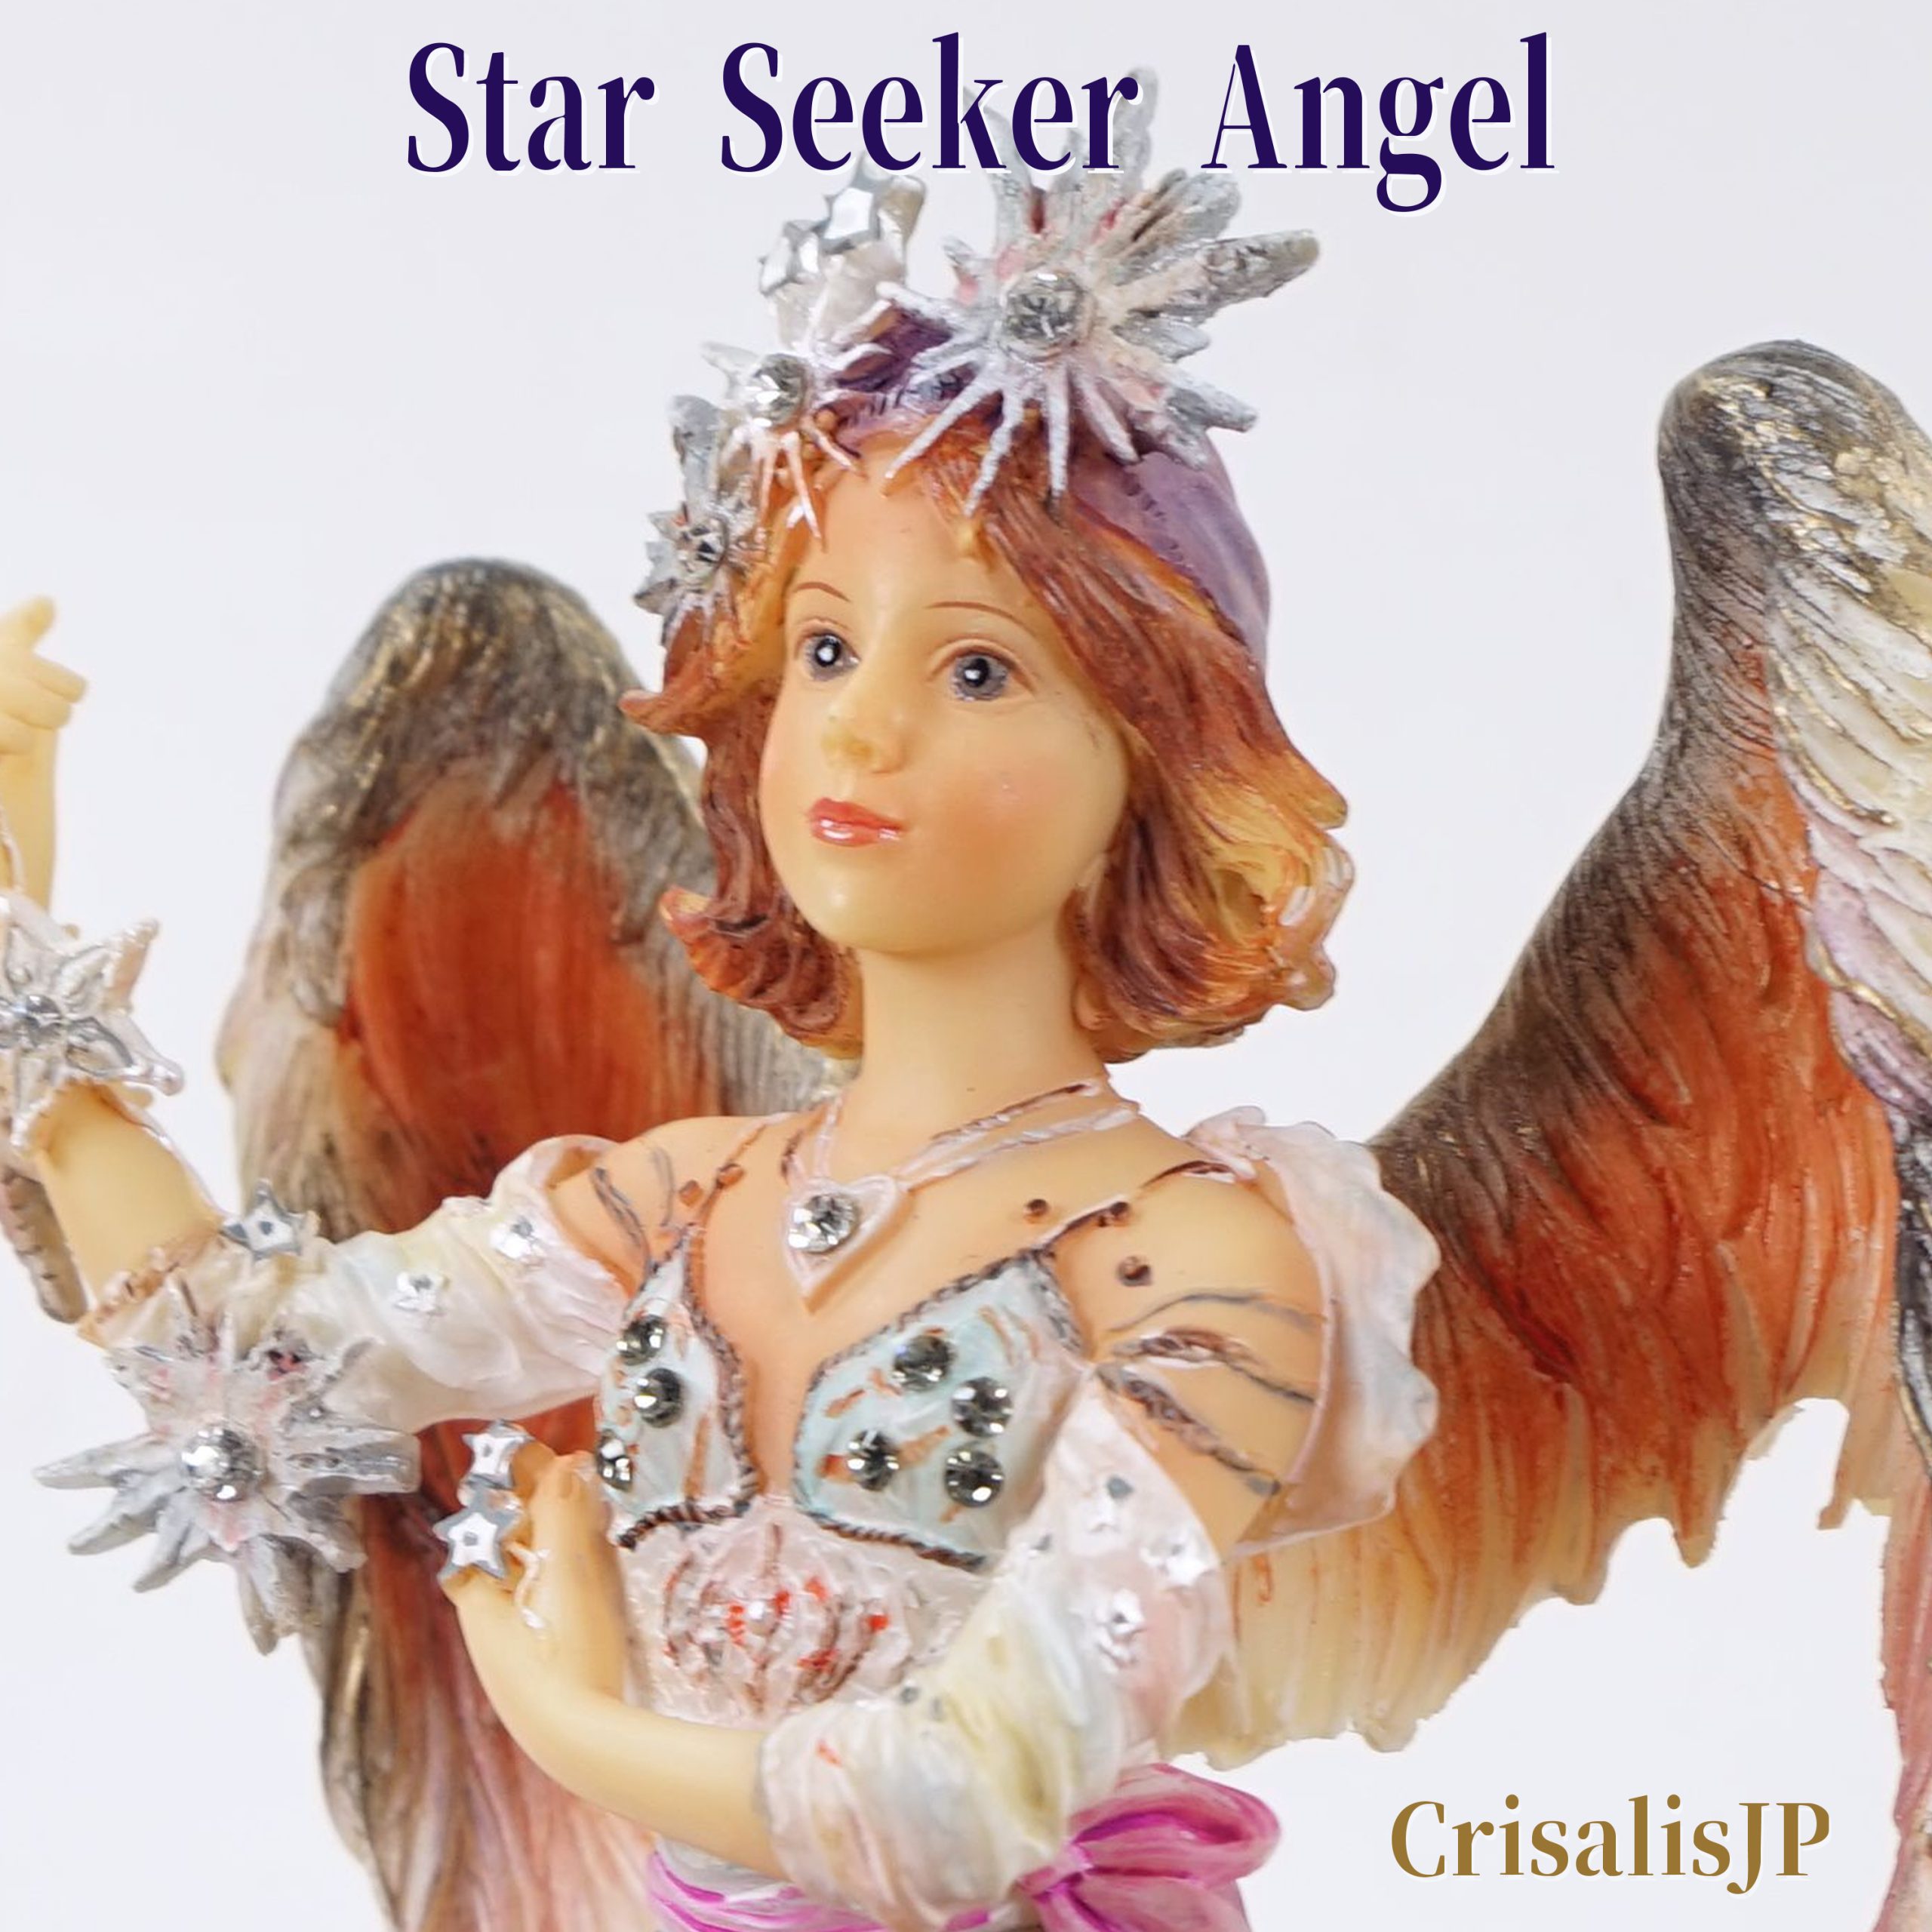 Star Seeker Angel